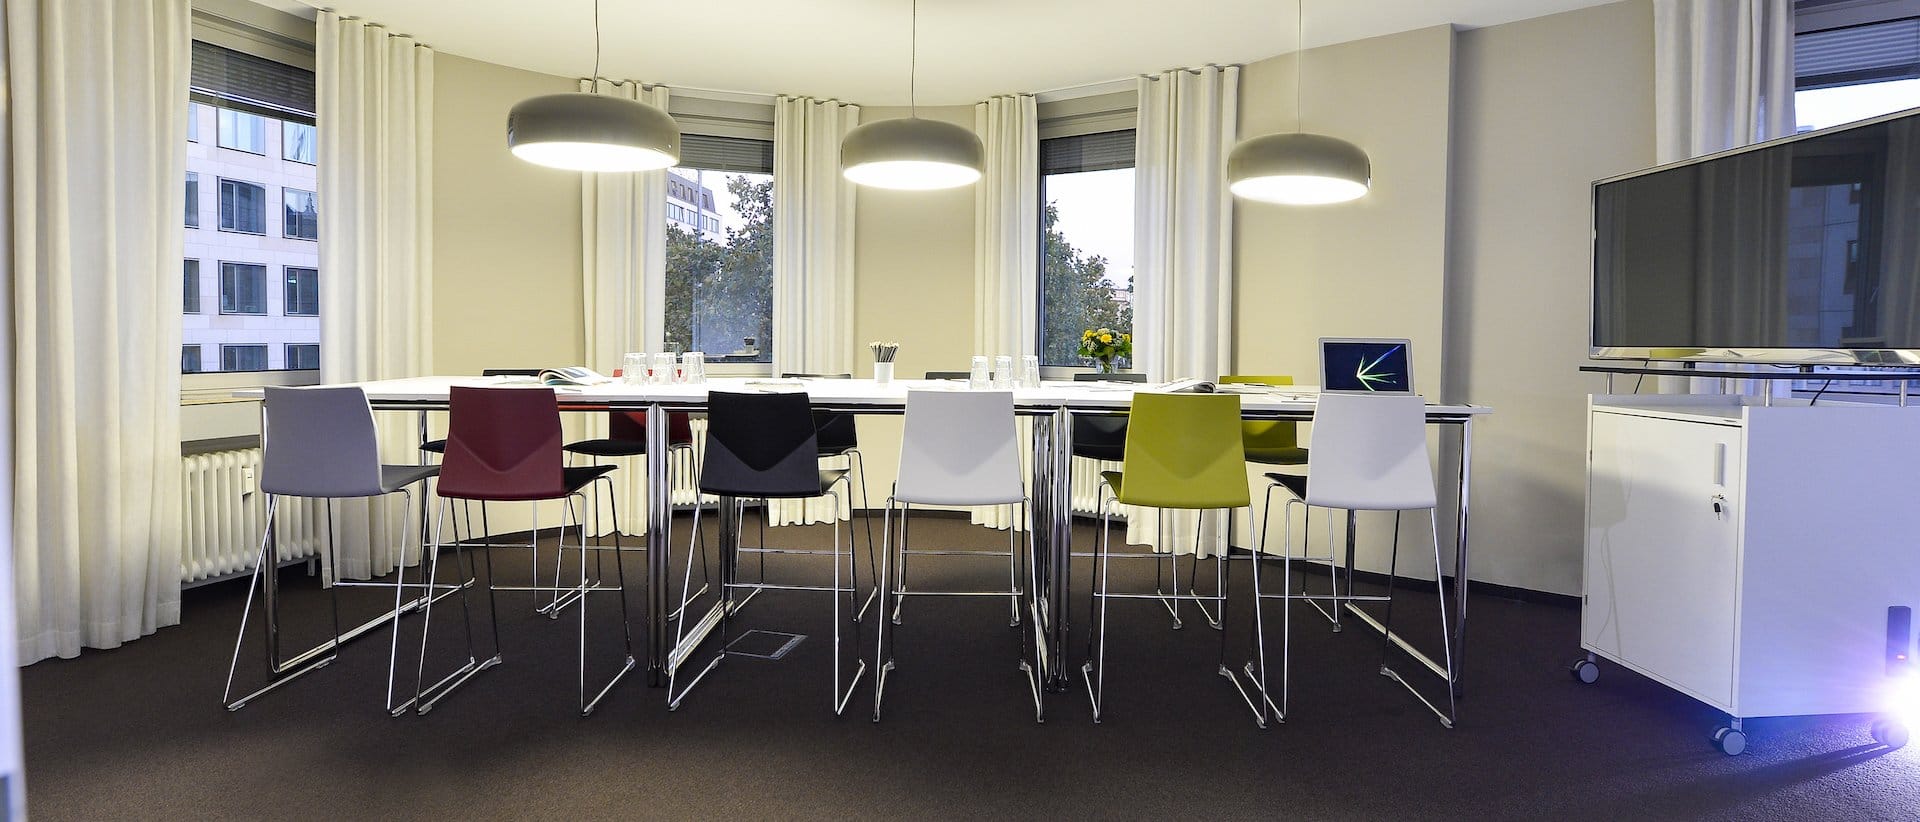 Bild von Raum Workshop mit Fokus auf die hohen Designer-Stühle und der entspannten, hellen Raumgestaltung